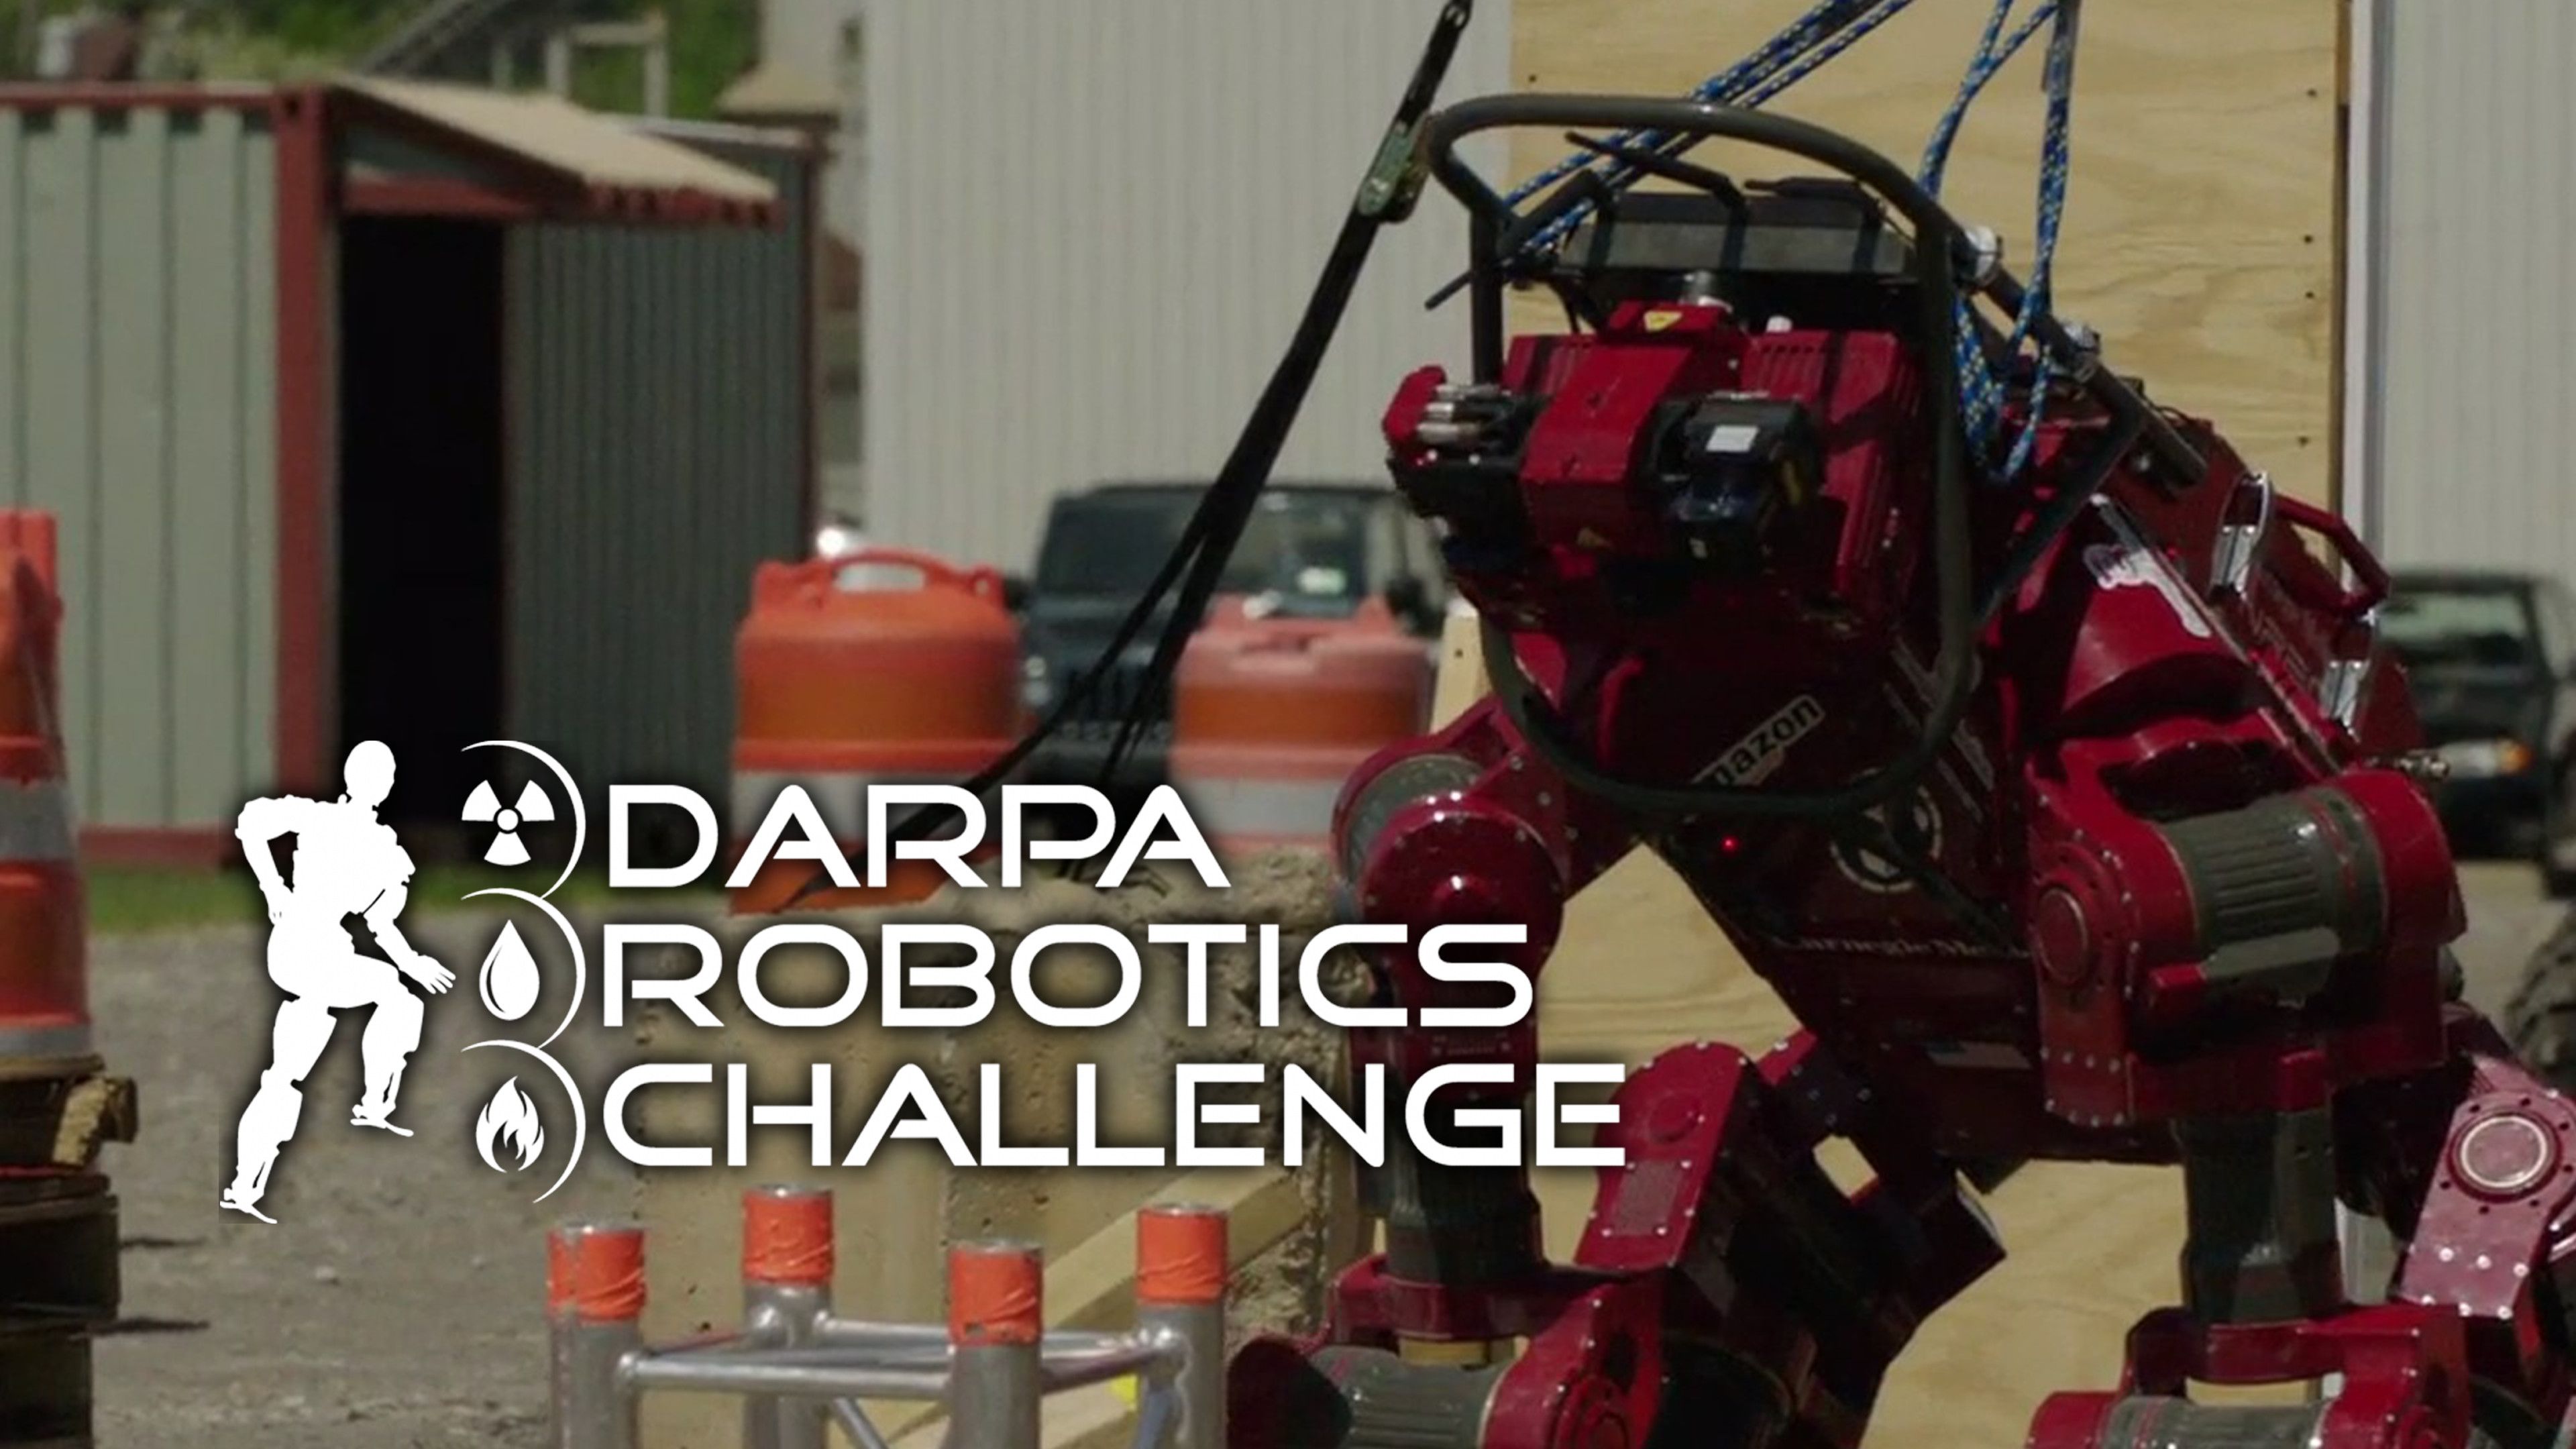 DARPA Robotics Challenge: DRC 101